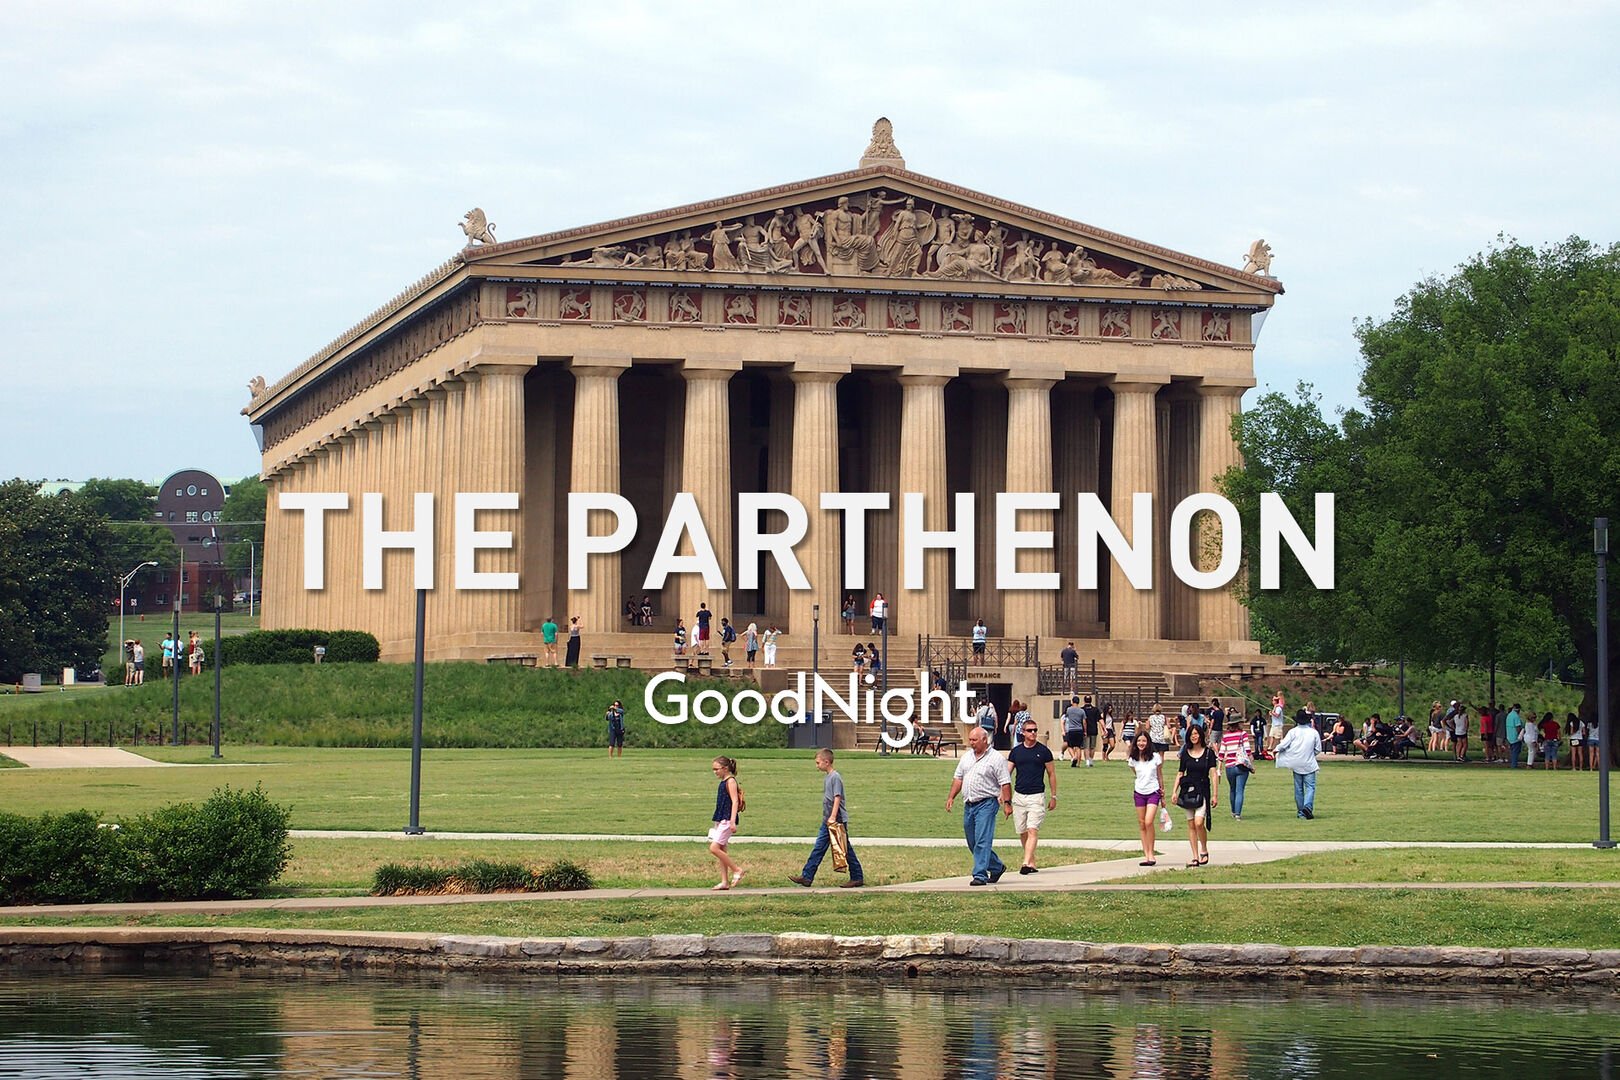 9 min walk: The Parthenon